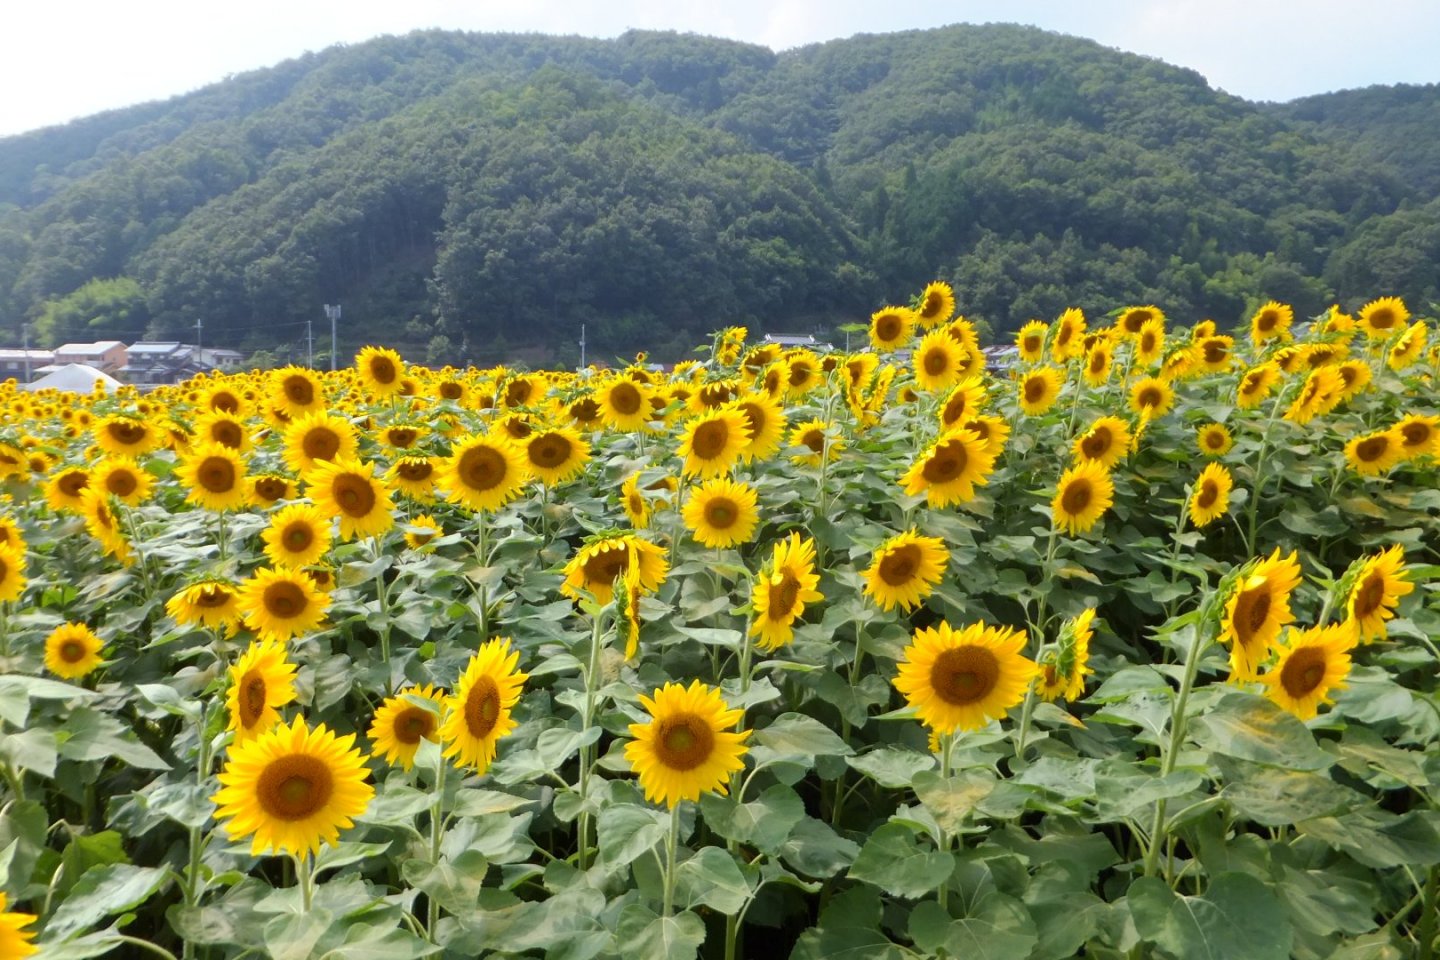 Descubra o Festival Nanco Sunflower no Japão